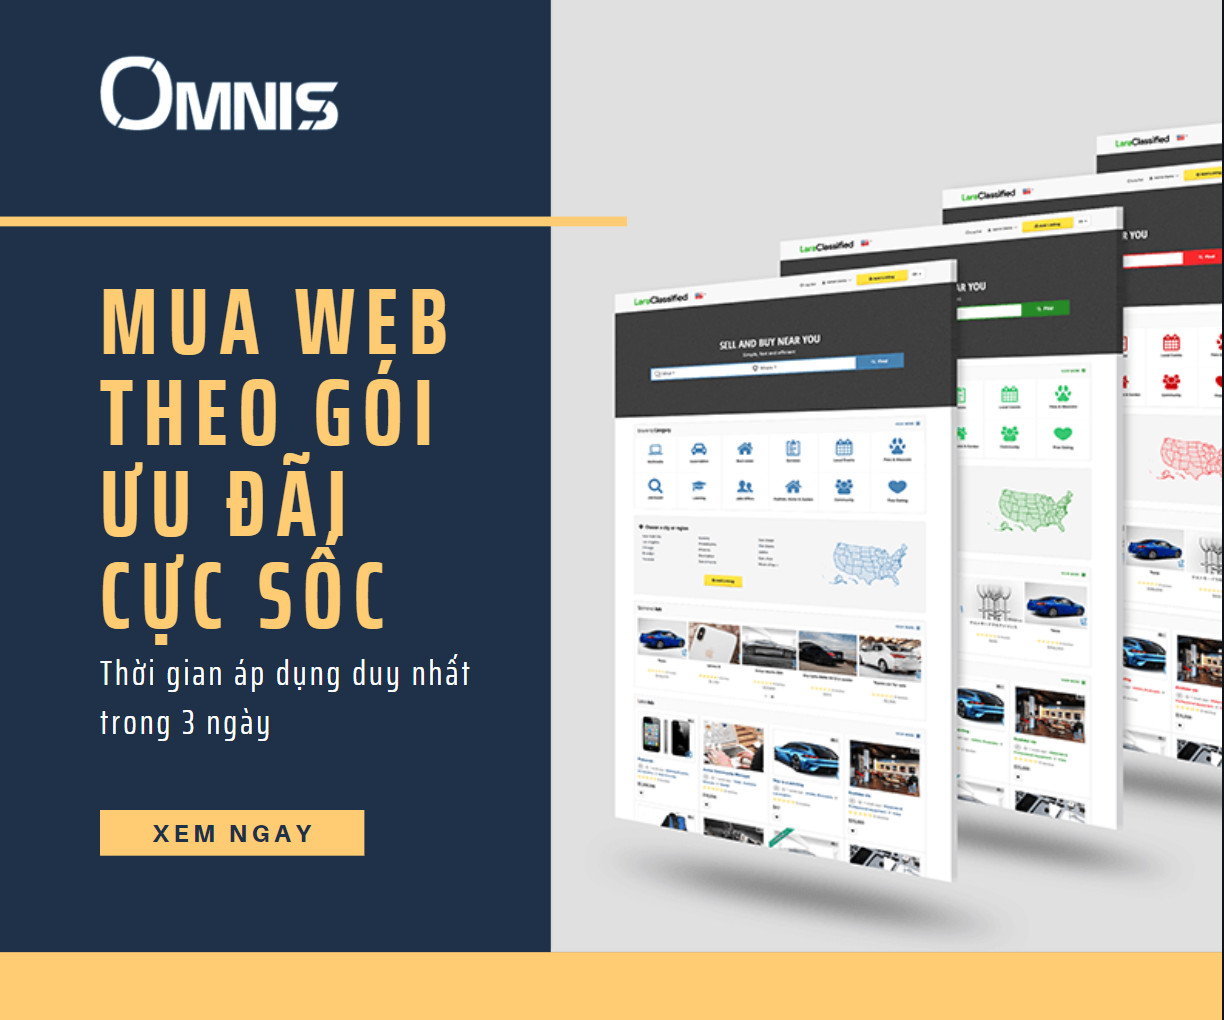 Hình ảnh website được thiết kế bởi đội ngũ chuyên nghiệp của OMNIS